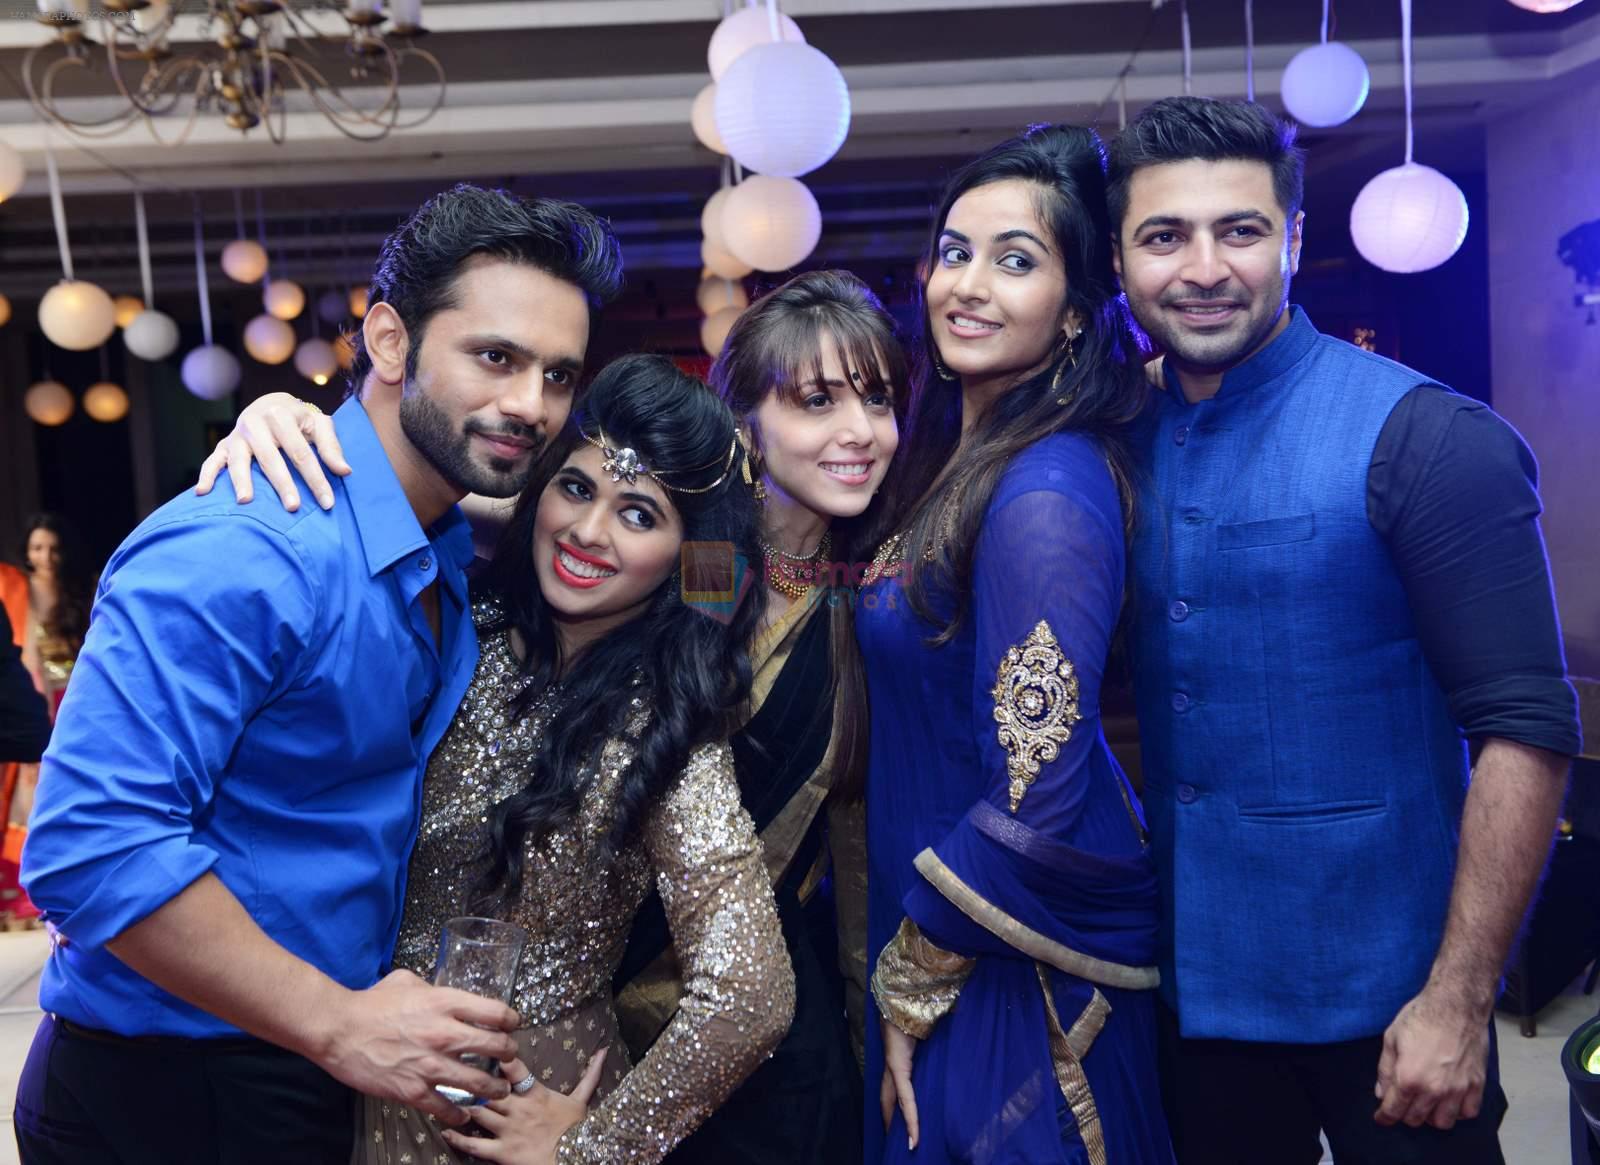 rahul vaidya + Megha israni + Jankee + Bhavin + harshi at Luv Hemali Sangget PARTY-1